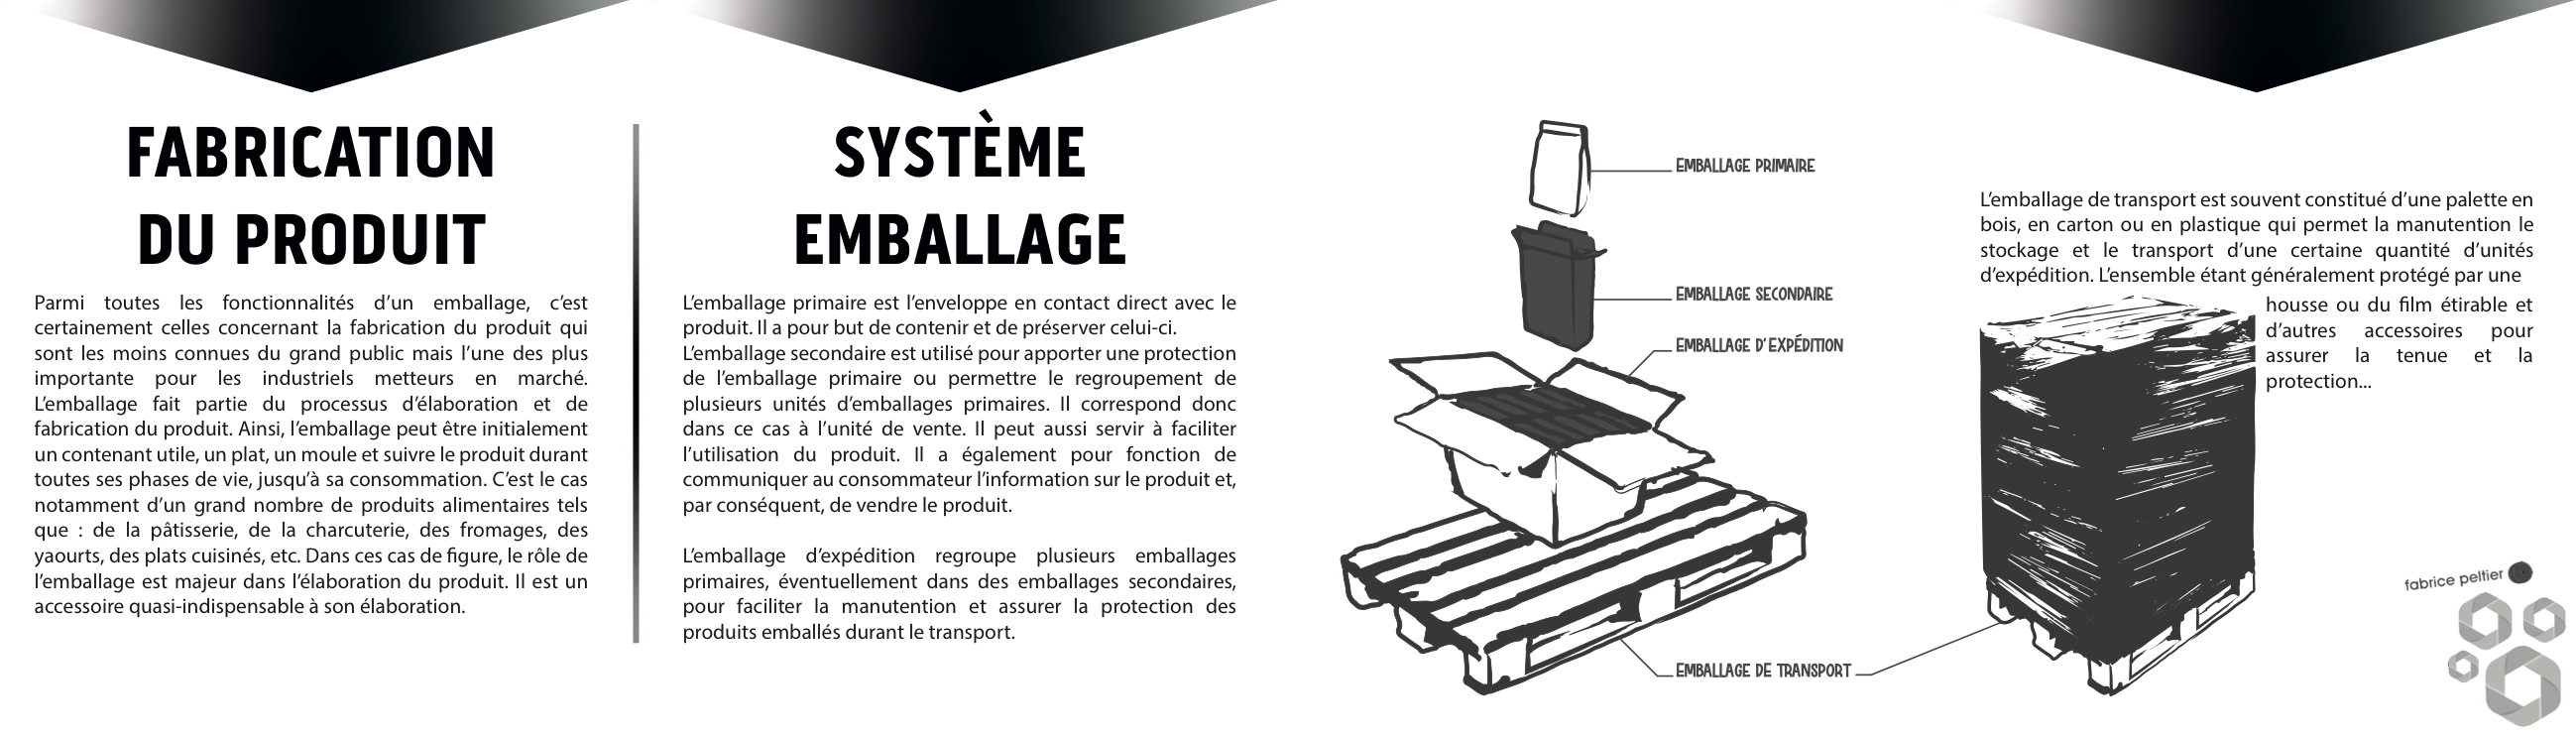 Fabrice Peltier - Espace le juste emballage - Production - Logistique